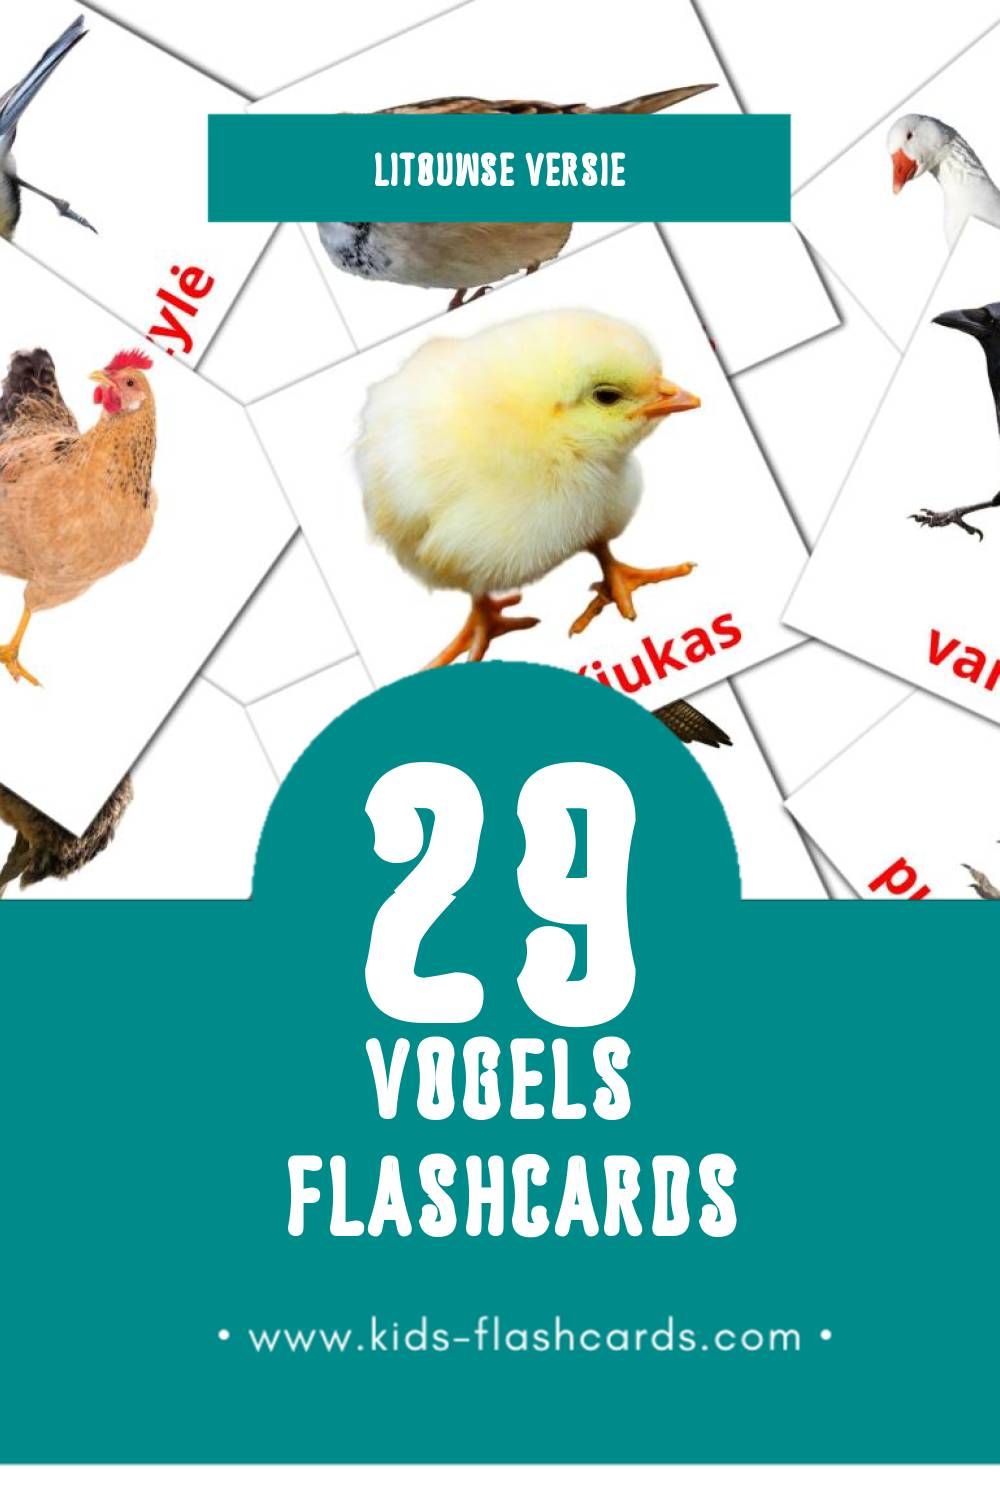 Visuele Paukščiai Flashcards voor Kleuters (29 kaarten in het Litouws)